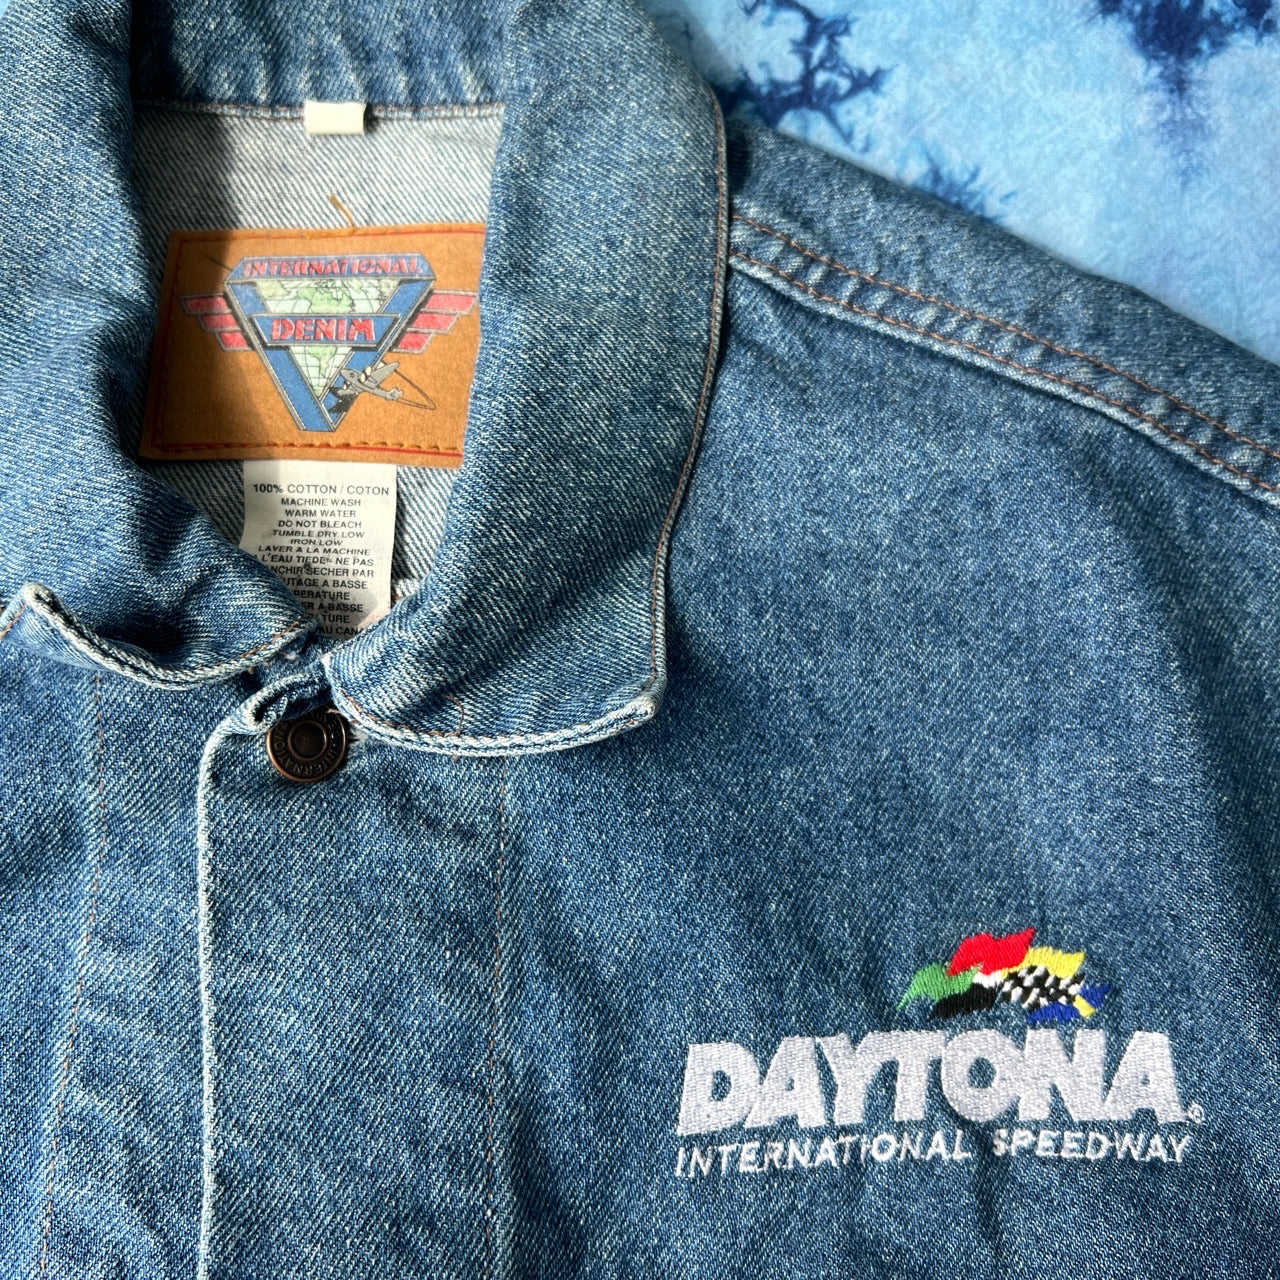 Daytona Speedway Denim Vest (L)